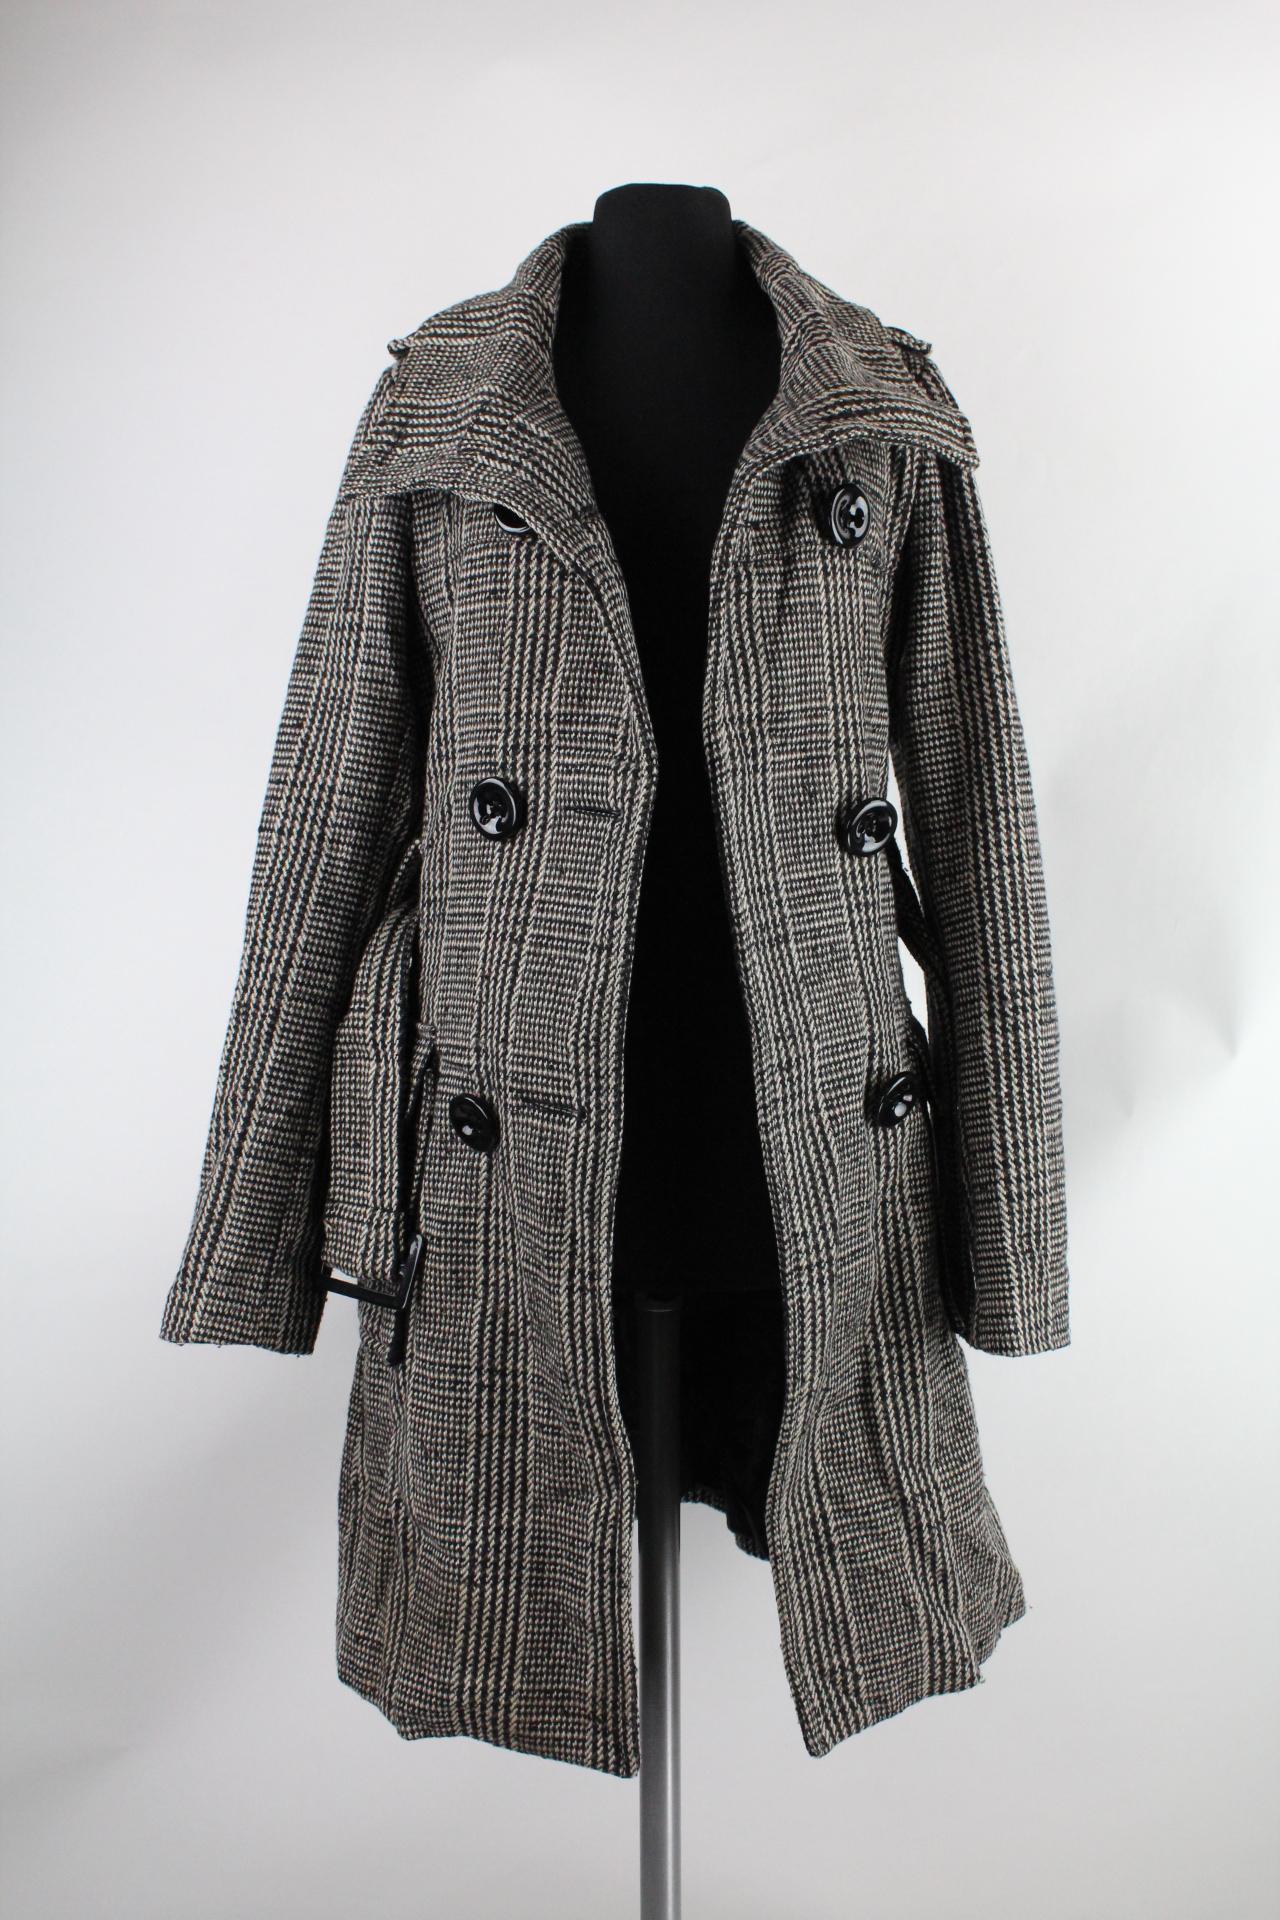 Amisu Damen-Mantel schwarz/weiß/braun Größe 34